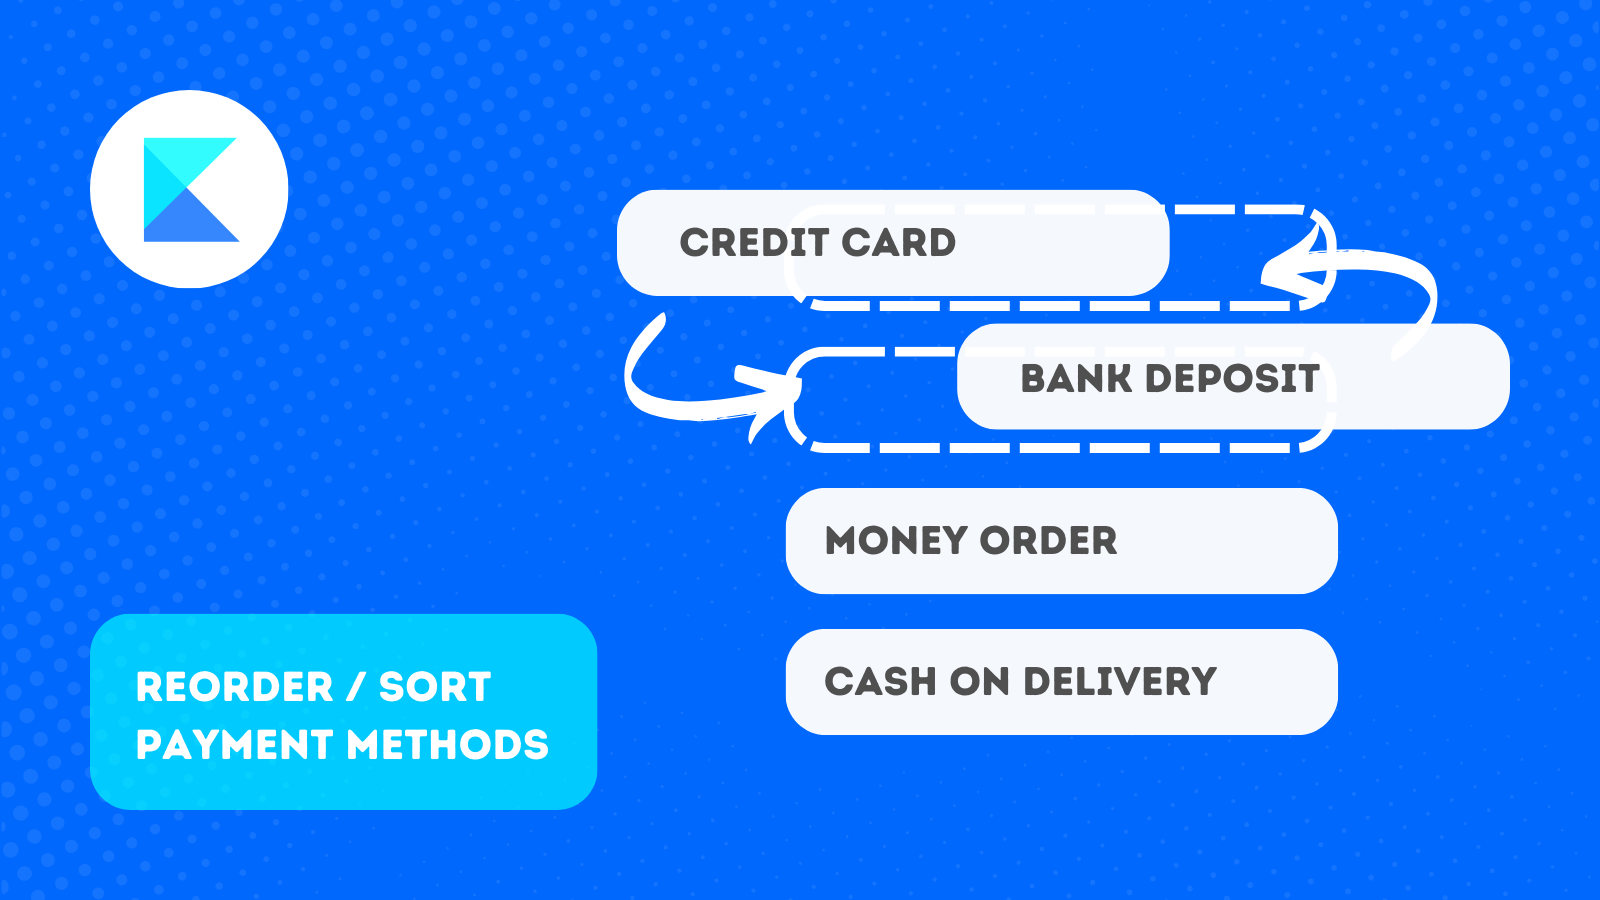 Reorder / sort payment methods